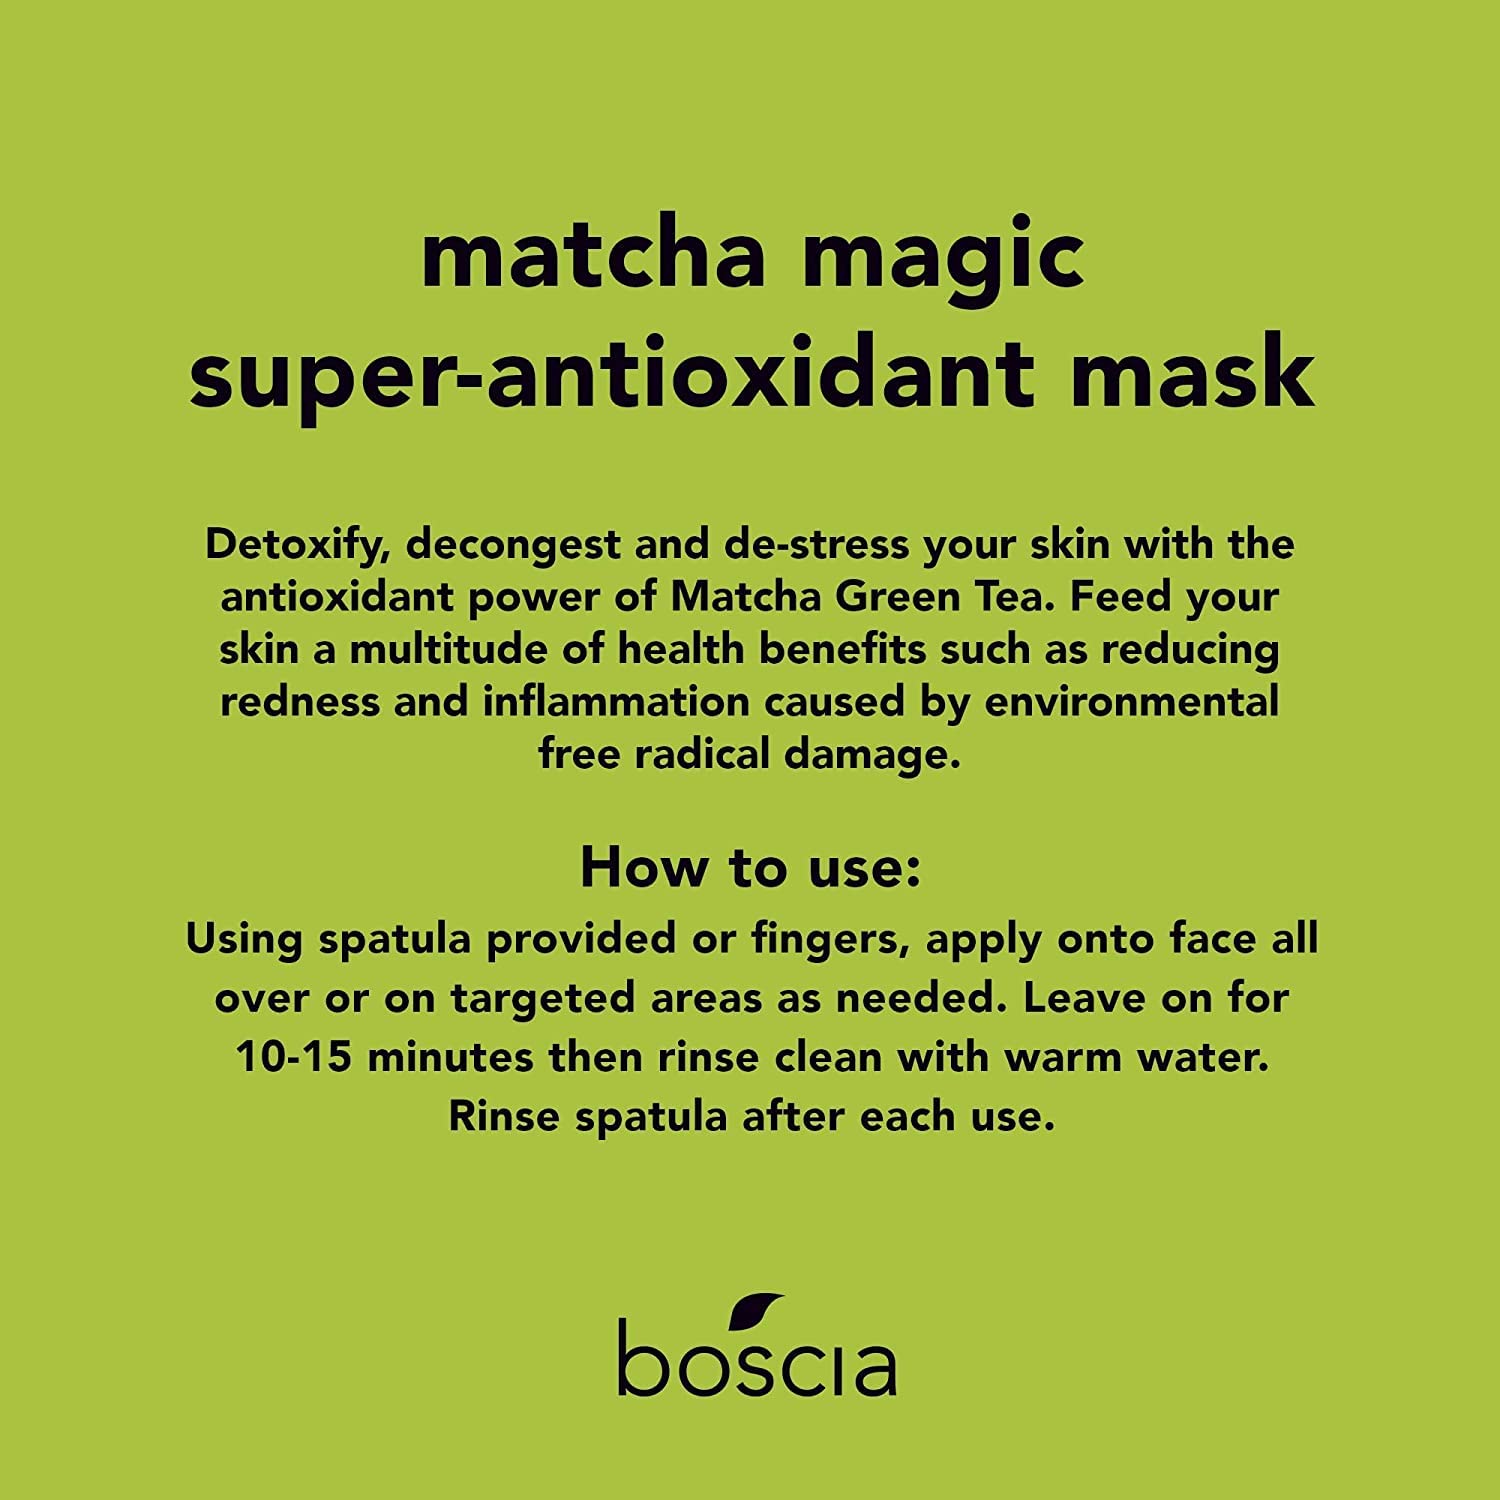 BOSCIA - MakeUp-BreakUp Cool Cleansing Oil & MATCHA Magic Super-Antioxidant Mask - Vegan, Cruelty-Free, Natural & Clean Skin Care - Bundle